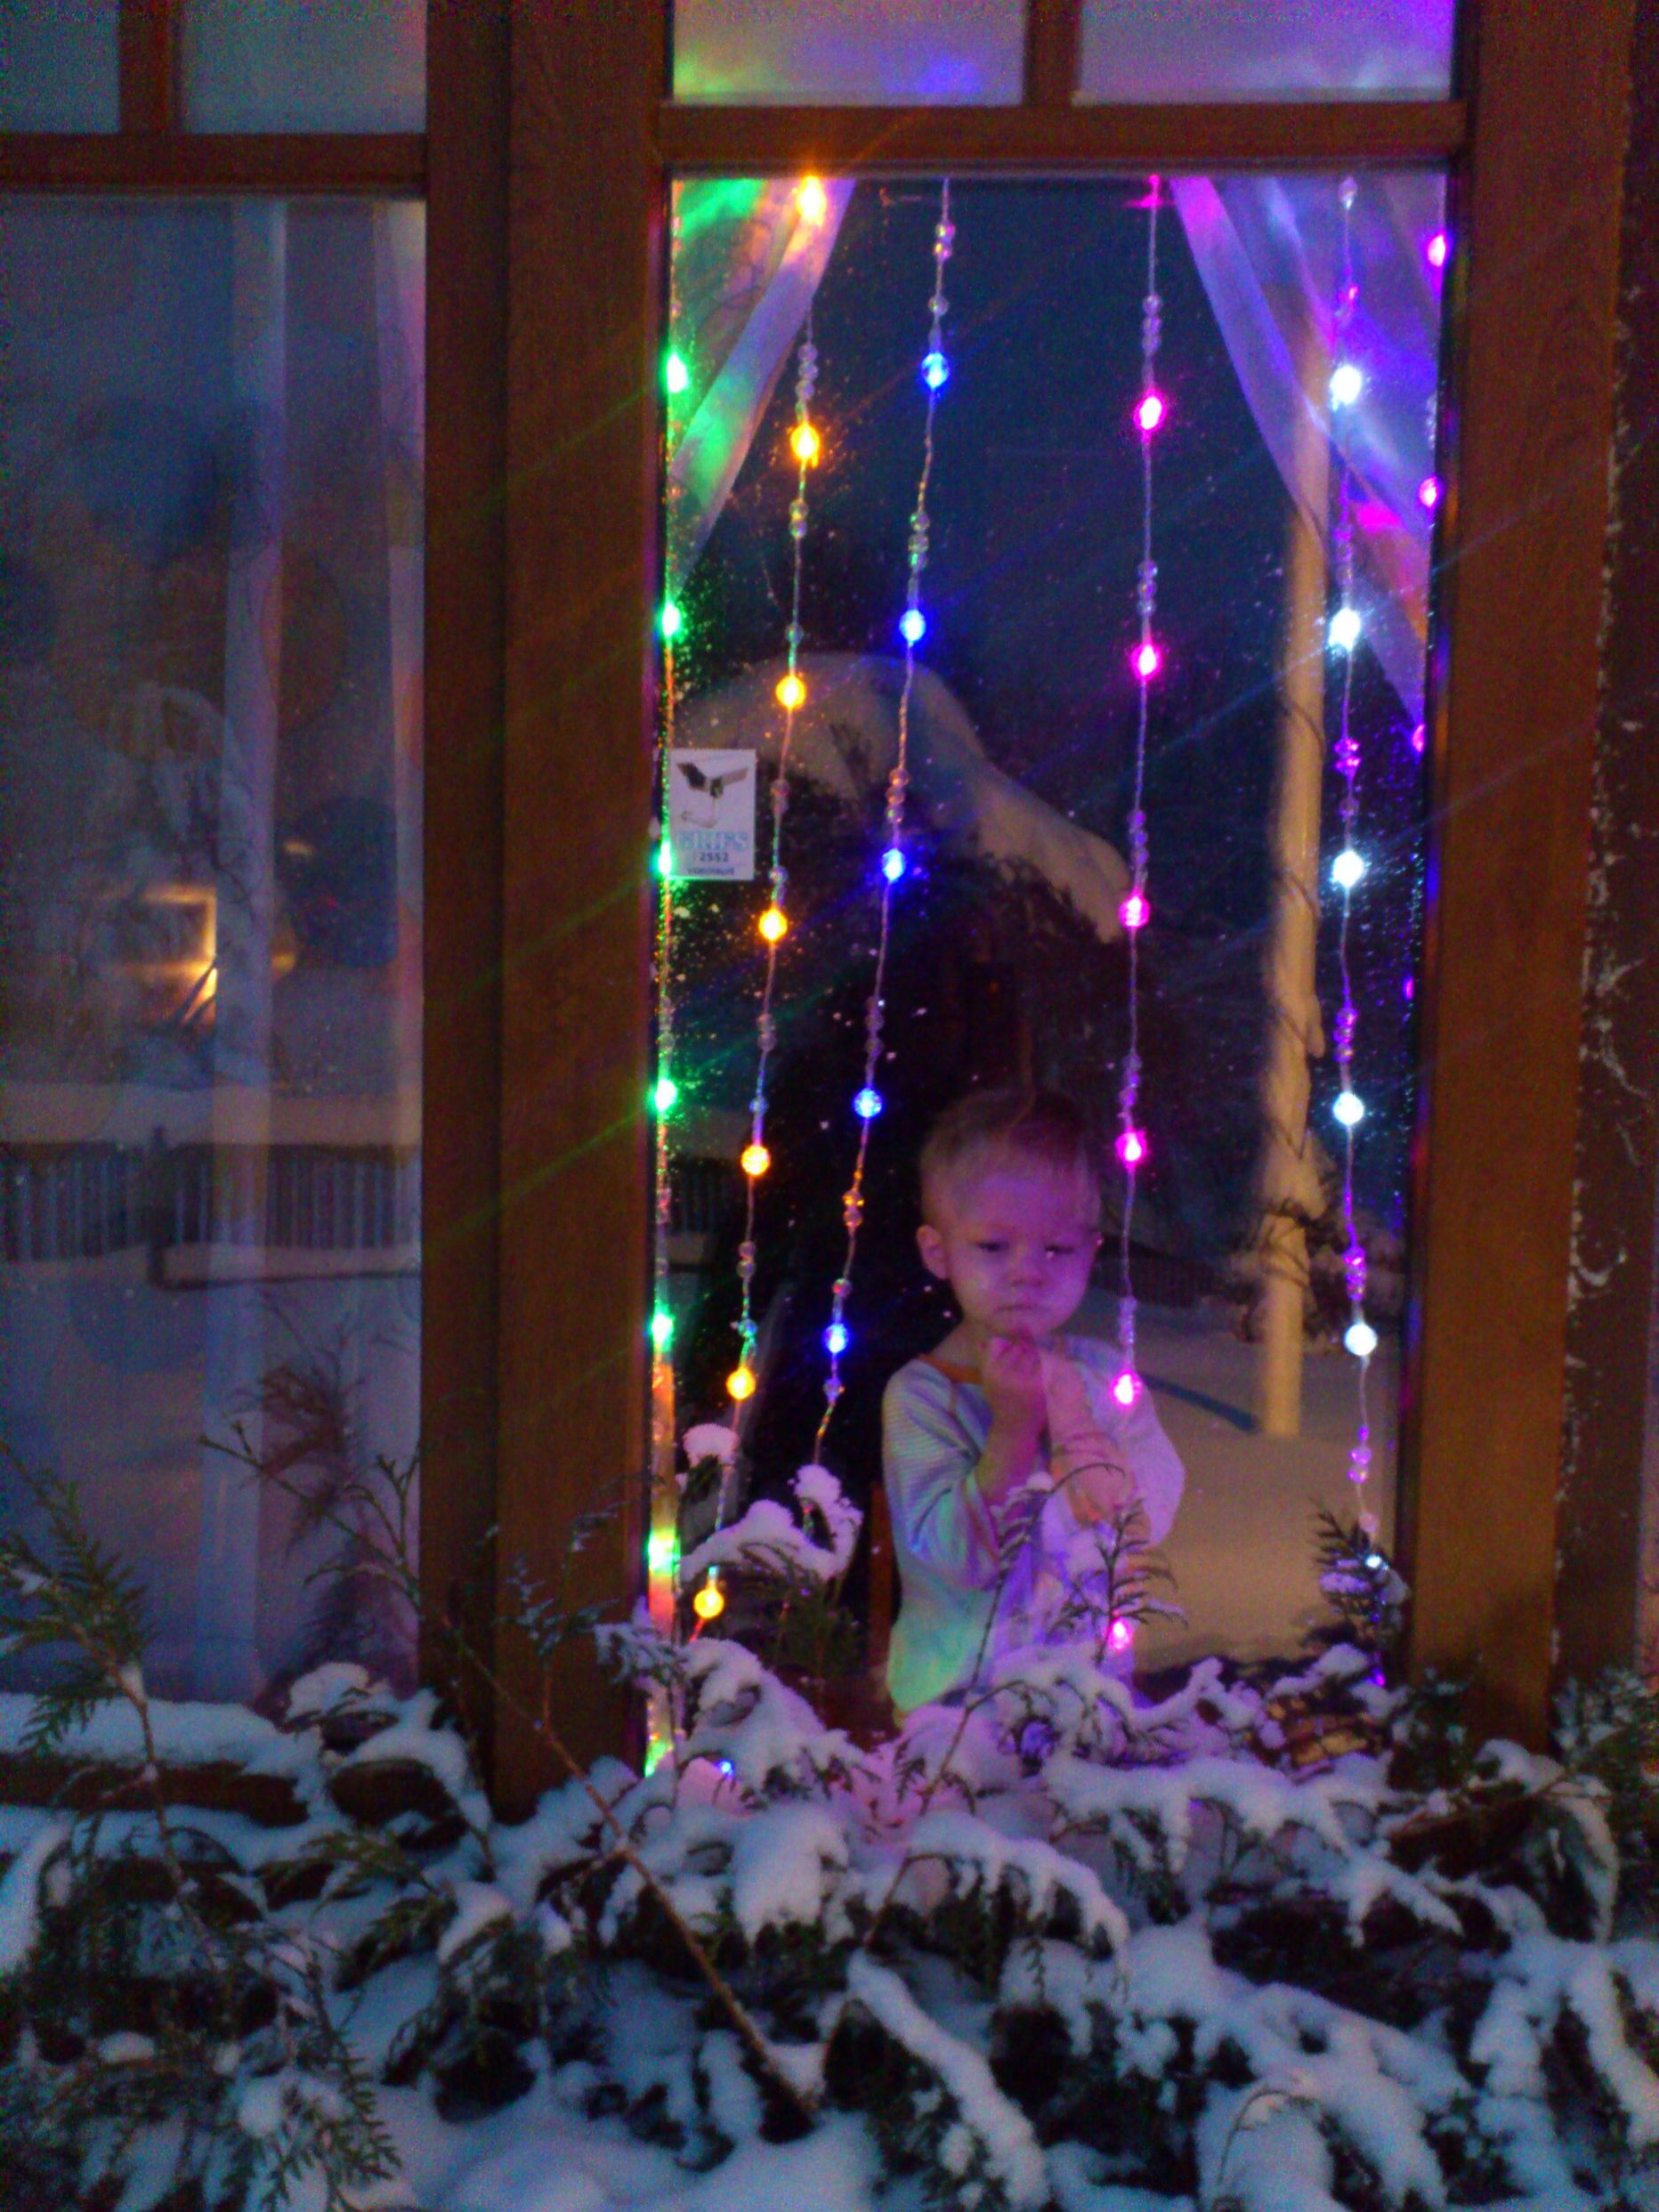 Võidupilt - Meie pere elab keset Lõuna-Eesti metsasid. 2-aastane perepoeg Siim ootab vägagi Jõule,sest vanaema räägib ikka iga päev päkapikkudest ja kellestki salapärasest Jõuluvanast,kes läbi tuisu aastas korra lapsi külastab.

Pilt on tehtud Sony Ericsson Xperia telefoniga.